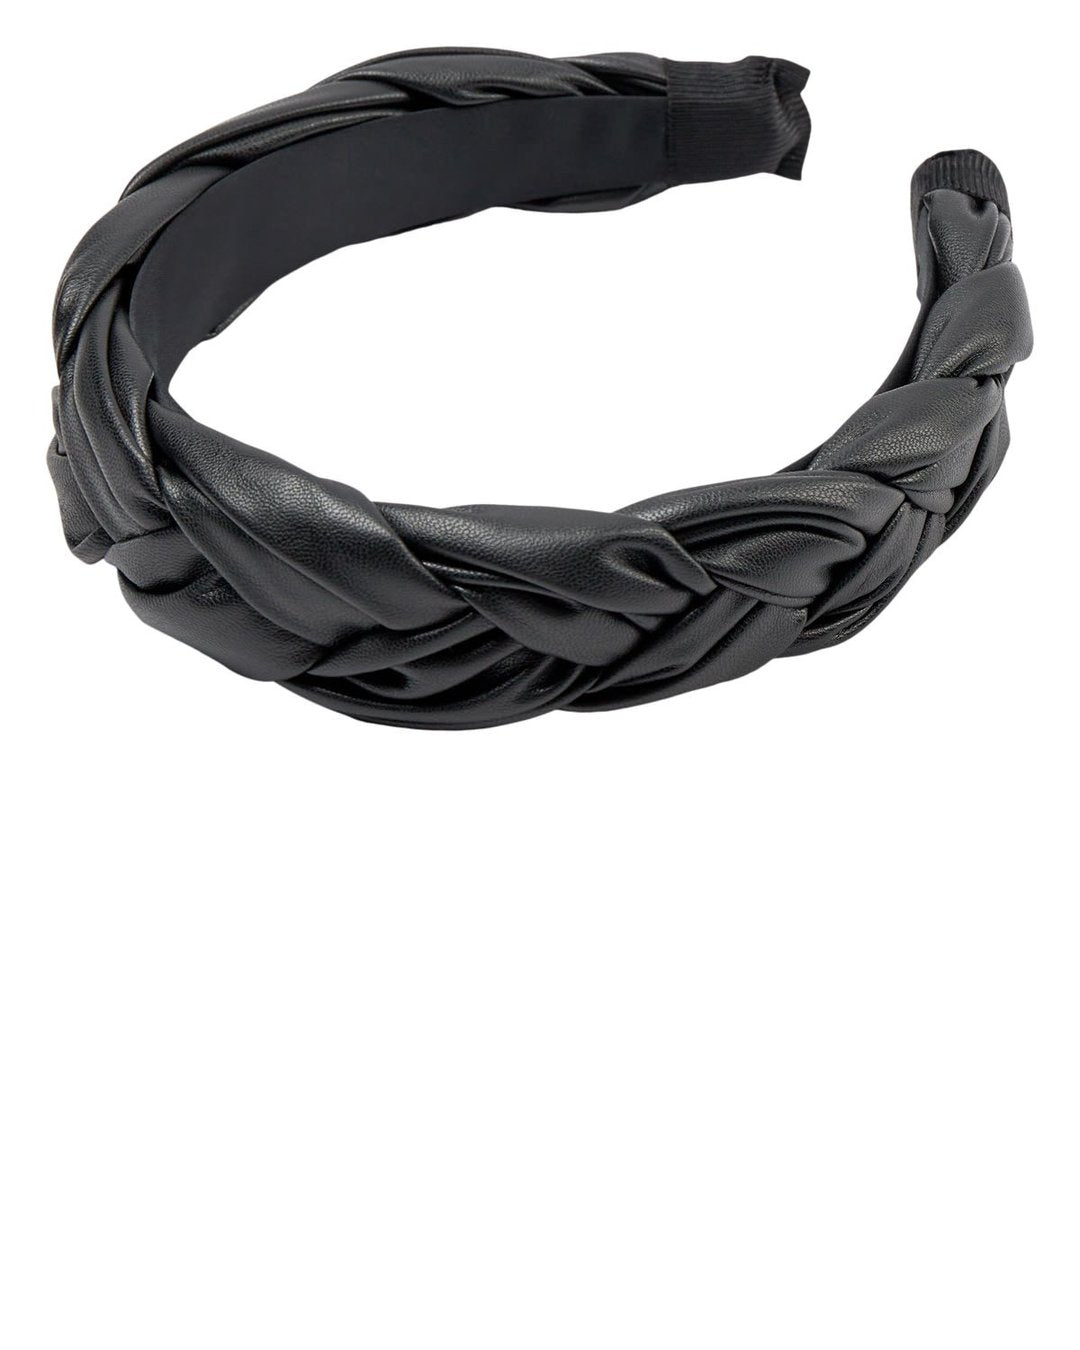 Nubraidy Headband - Black